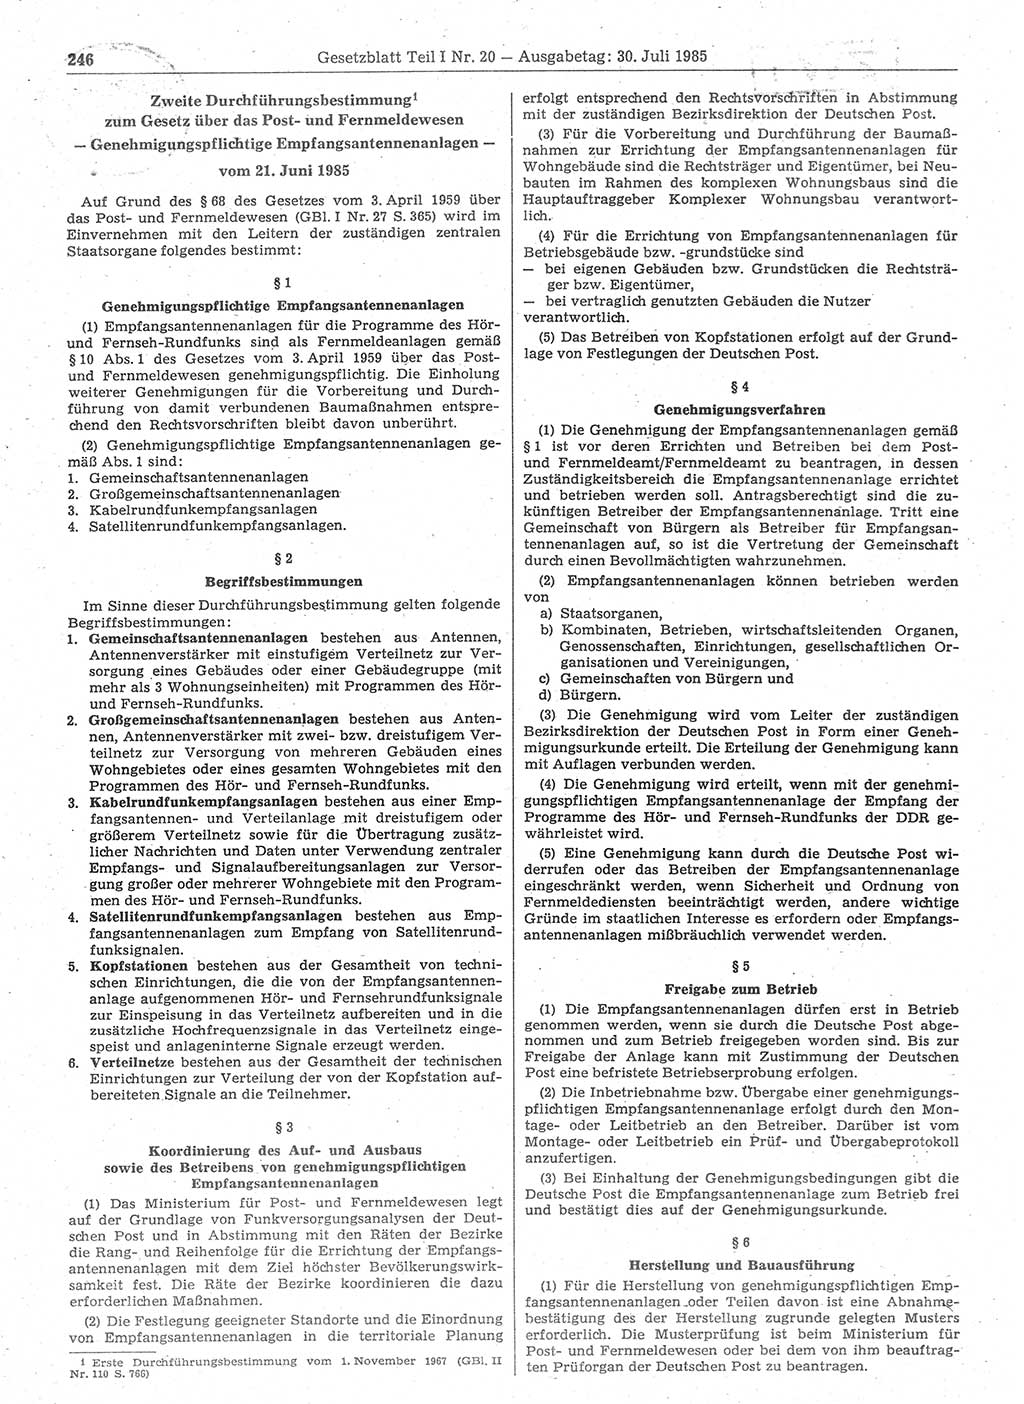 Gesetzblatt (GBl.) der Deutschen Demokratischen Republik (DDR) Teil Ⅰ 1985, Seite 246 (GBl. DDR Ⅰ 1985, S. 246)